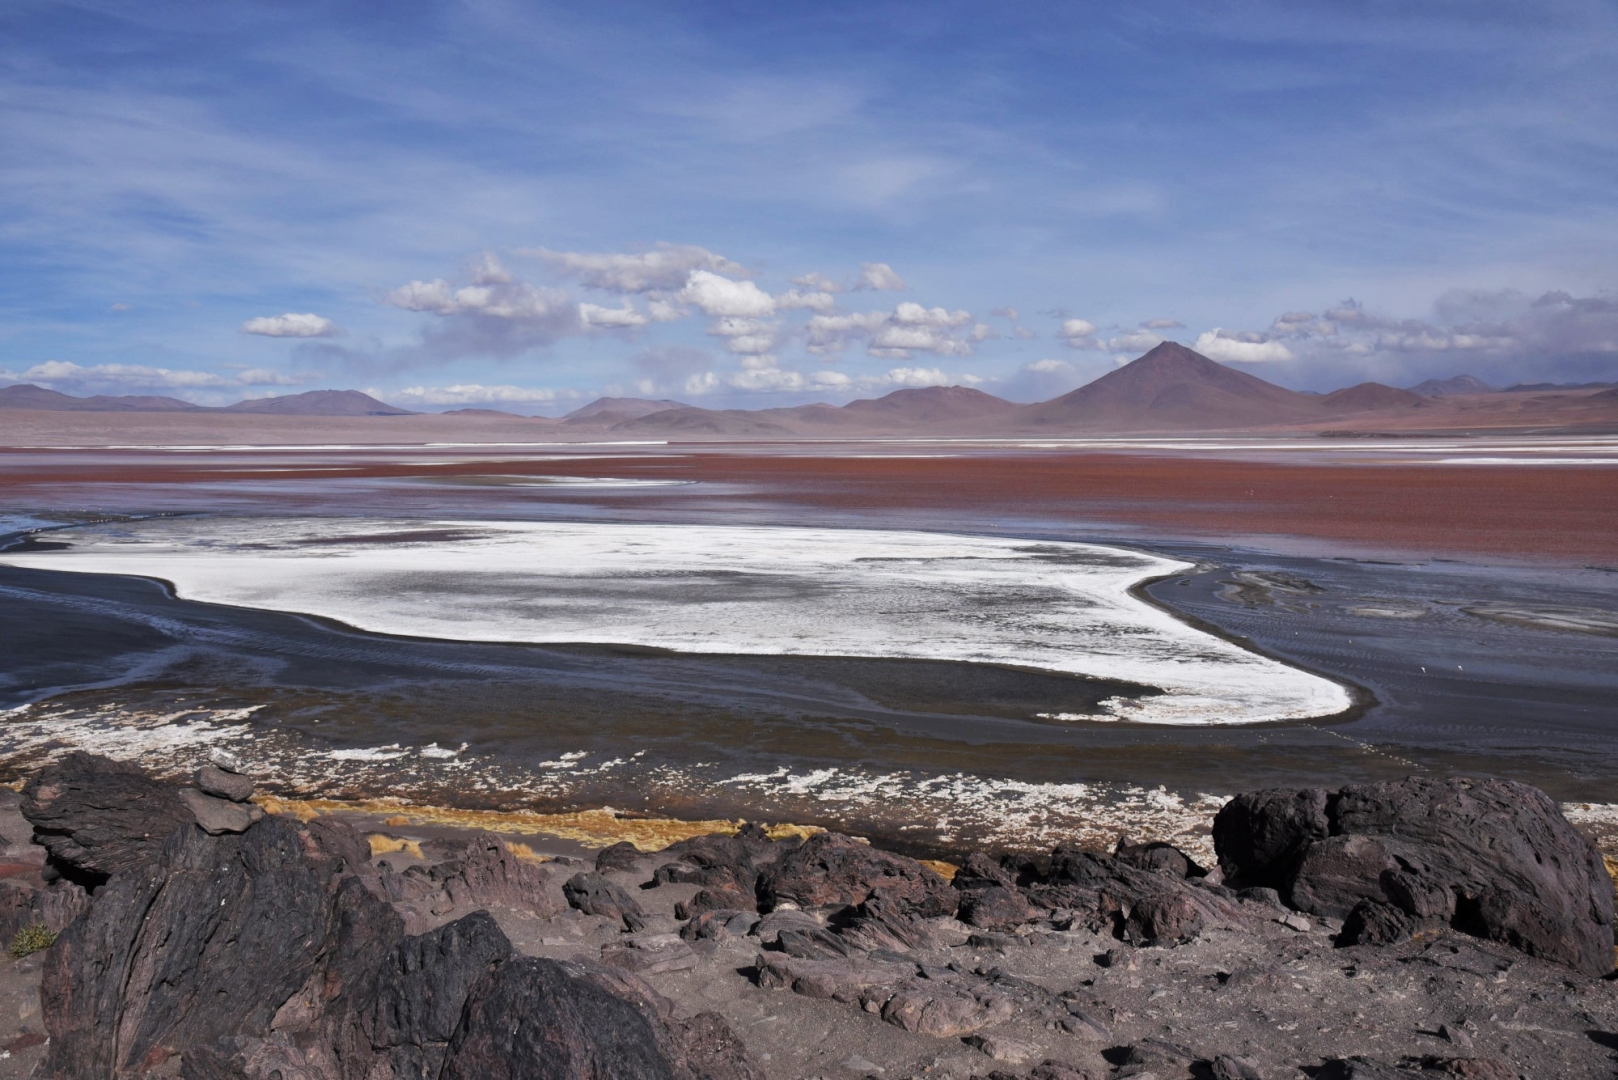 Лагуна Колорадо – одно из минеральных озёр Плато Альтиплано. Лагуна имеет необычный цвет воды из-за большого количества микроэлементов красного цвета, которыми питаются Андские фламинго – один из самых редких видов, обитающих в Латинской Америке. Боливия